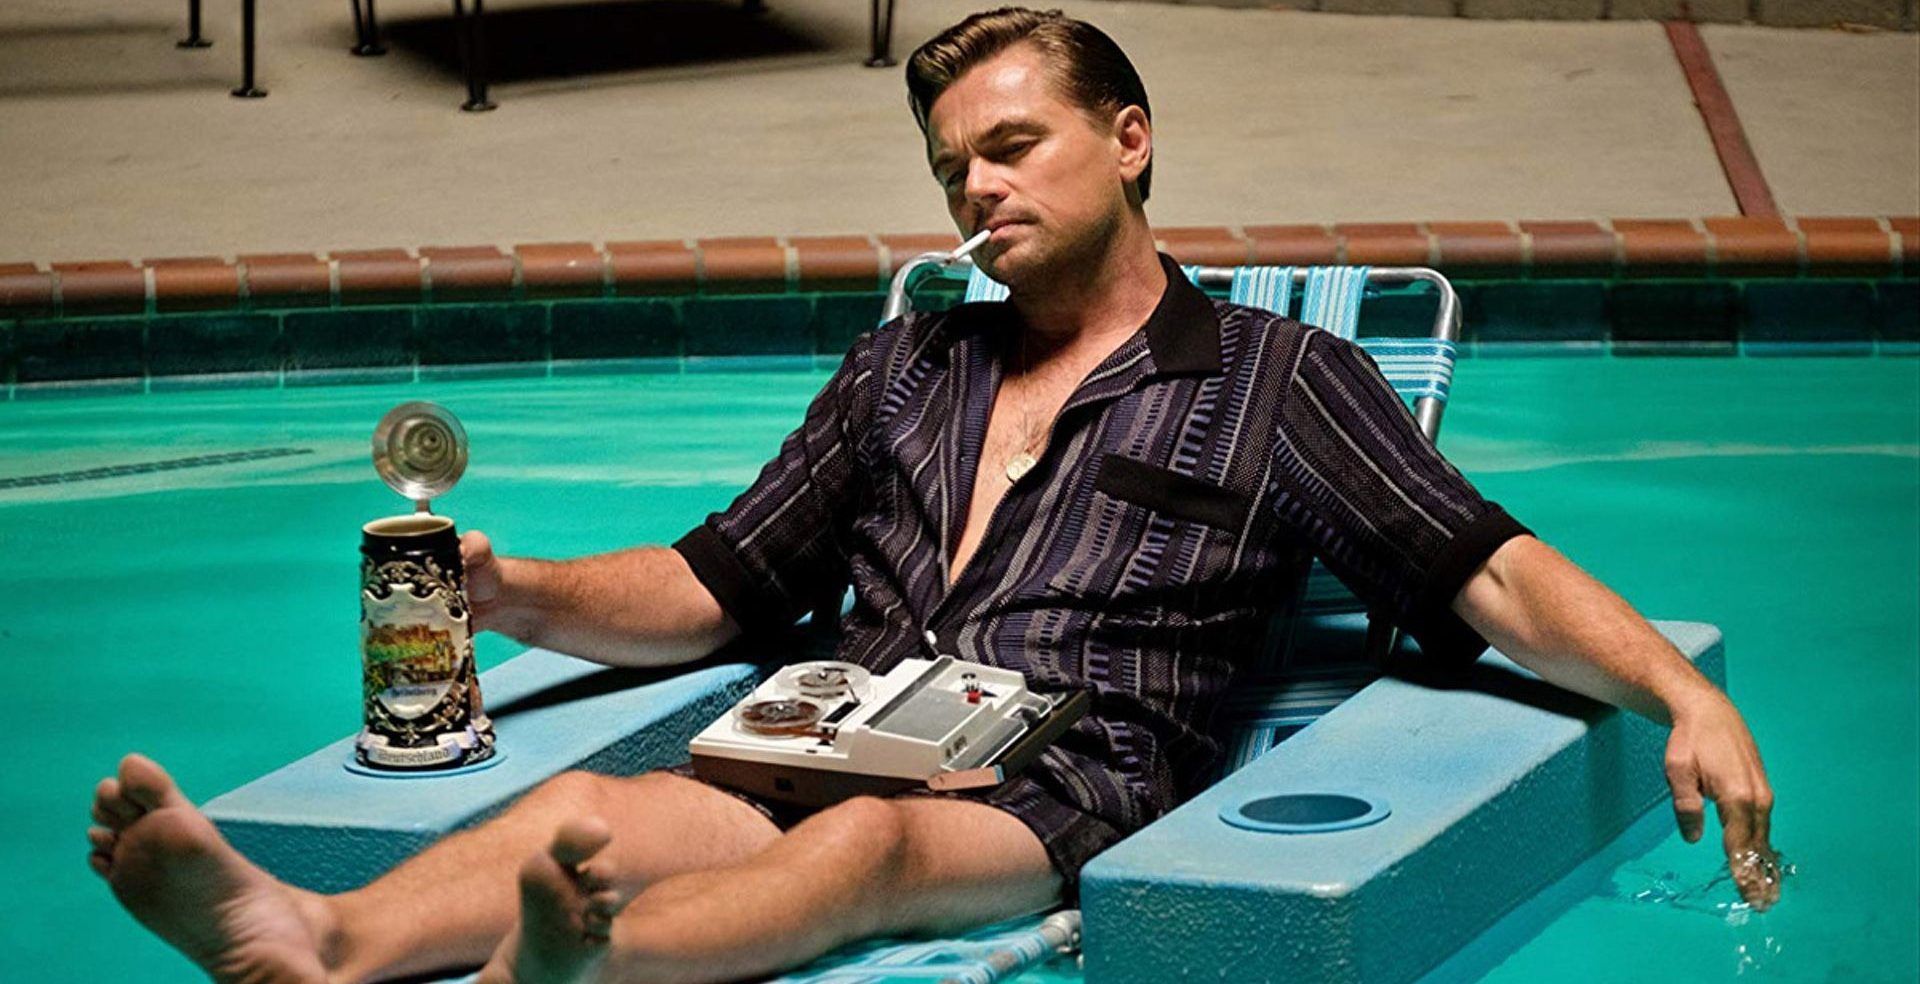 Os fãs acham que Leonardo DiCaprio é uma diva?